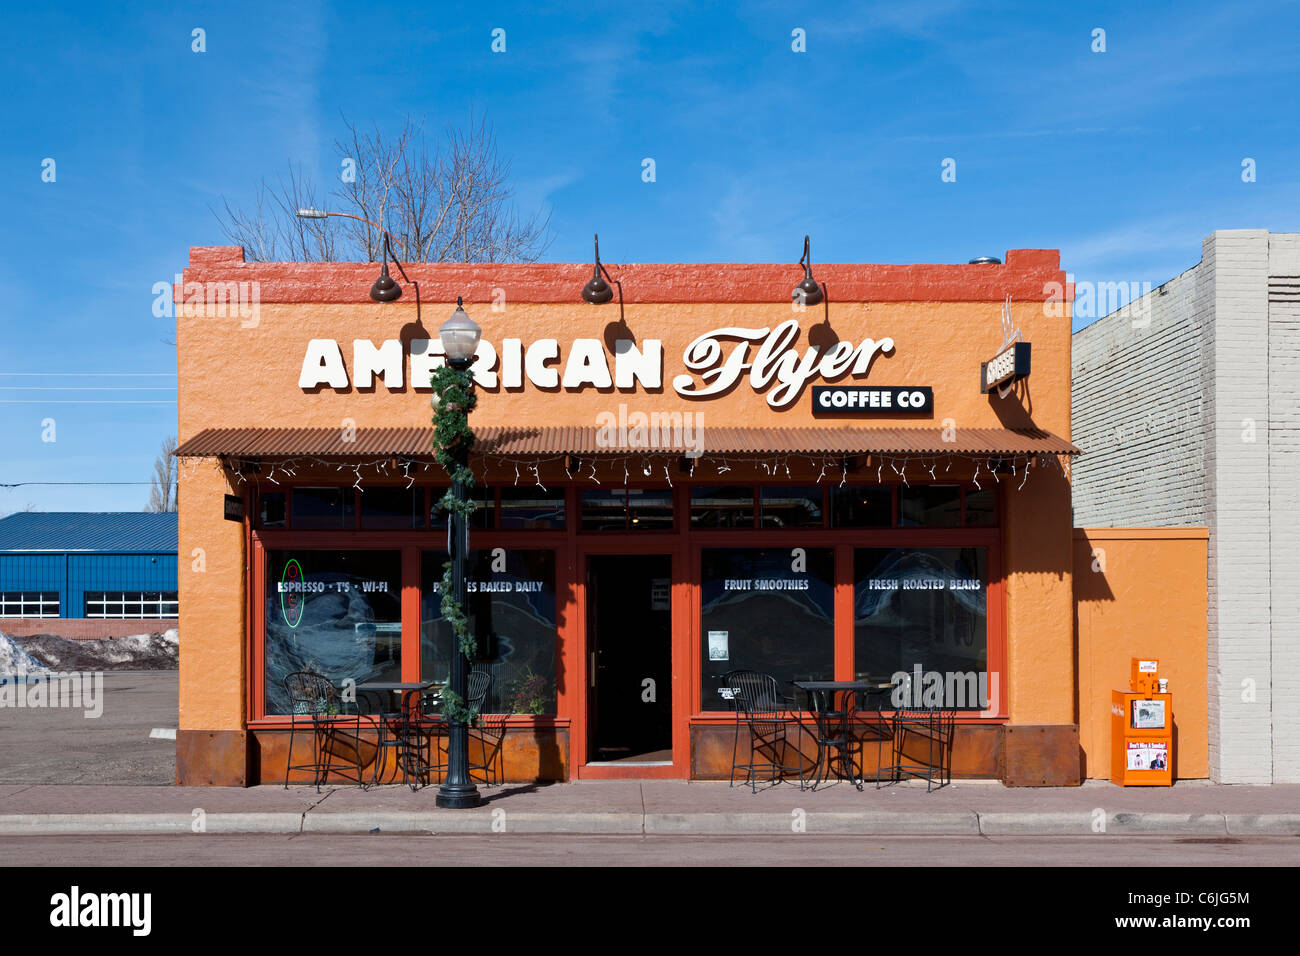 American flyer coffee bar in Arizona, USA Stock Photo